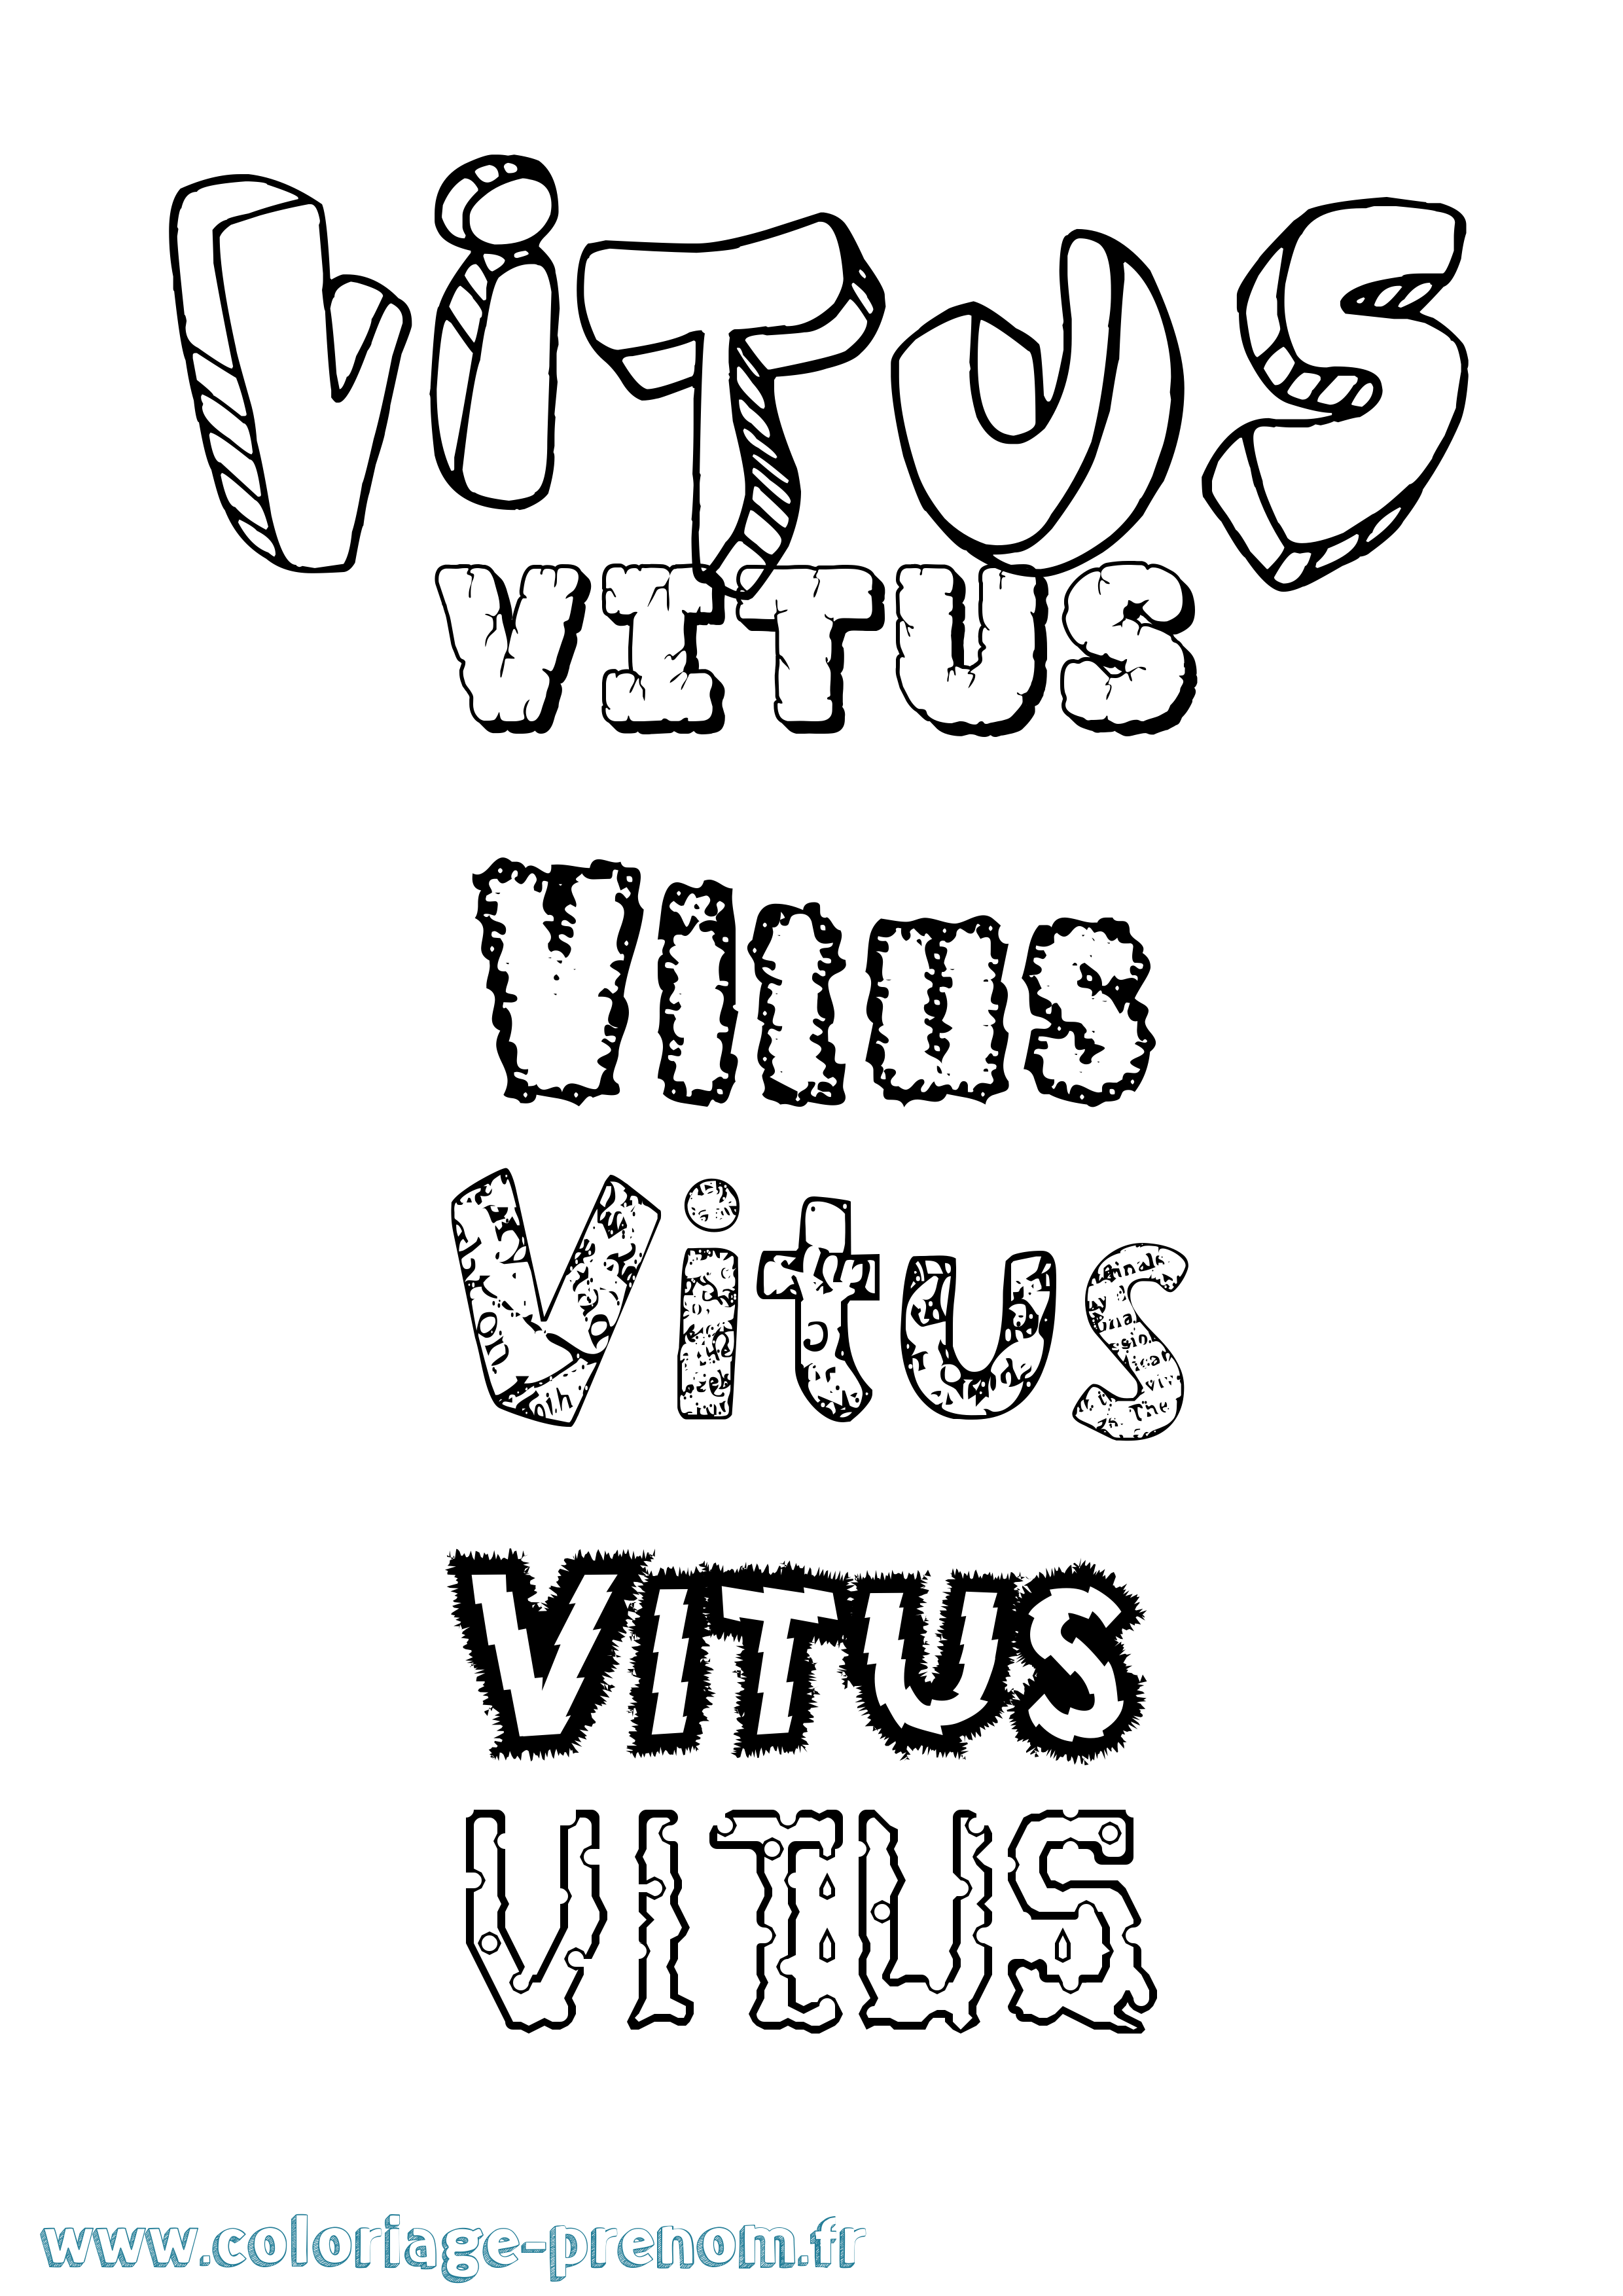 Coloriage prénom Vitus Destructuré